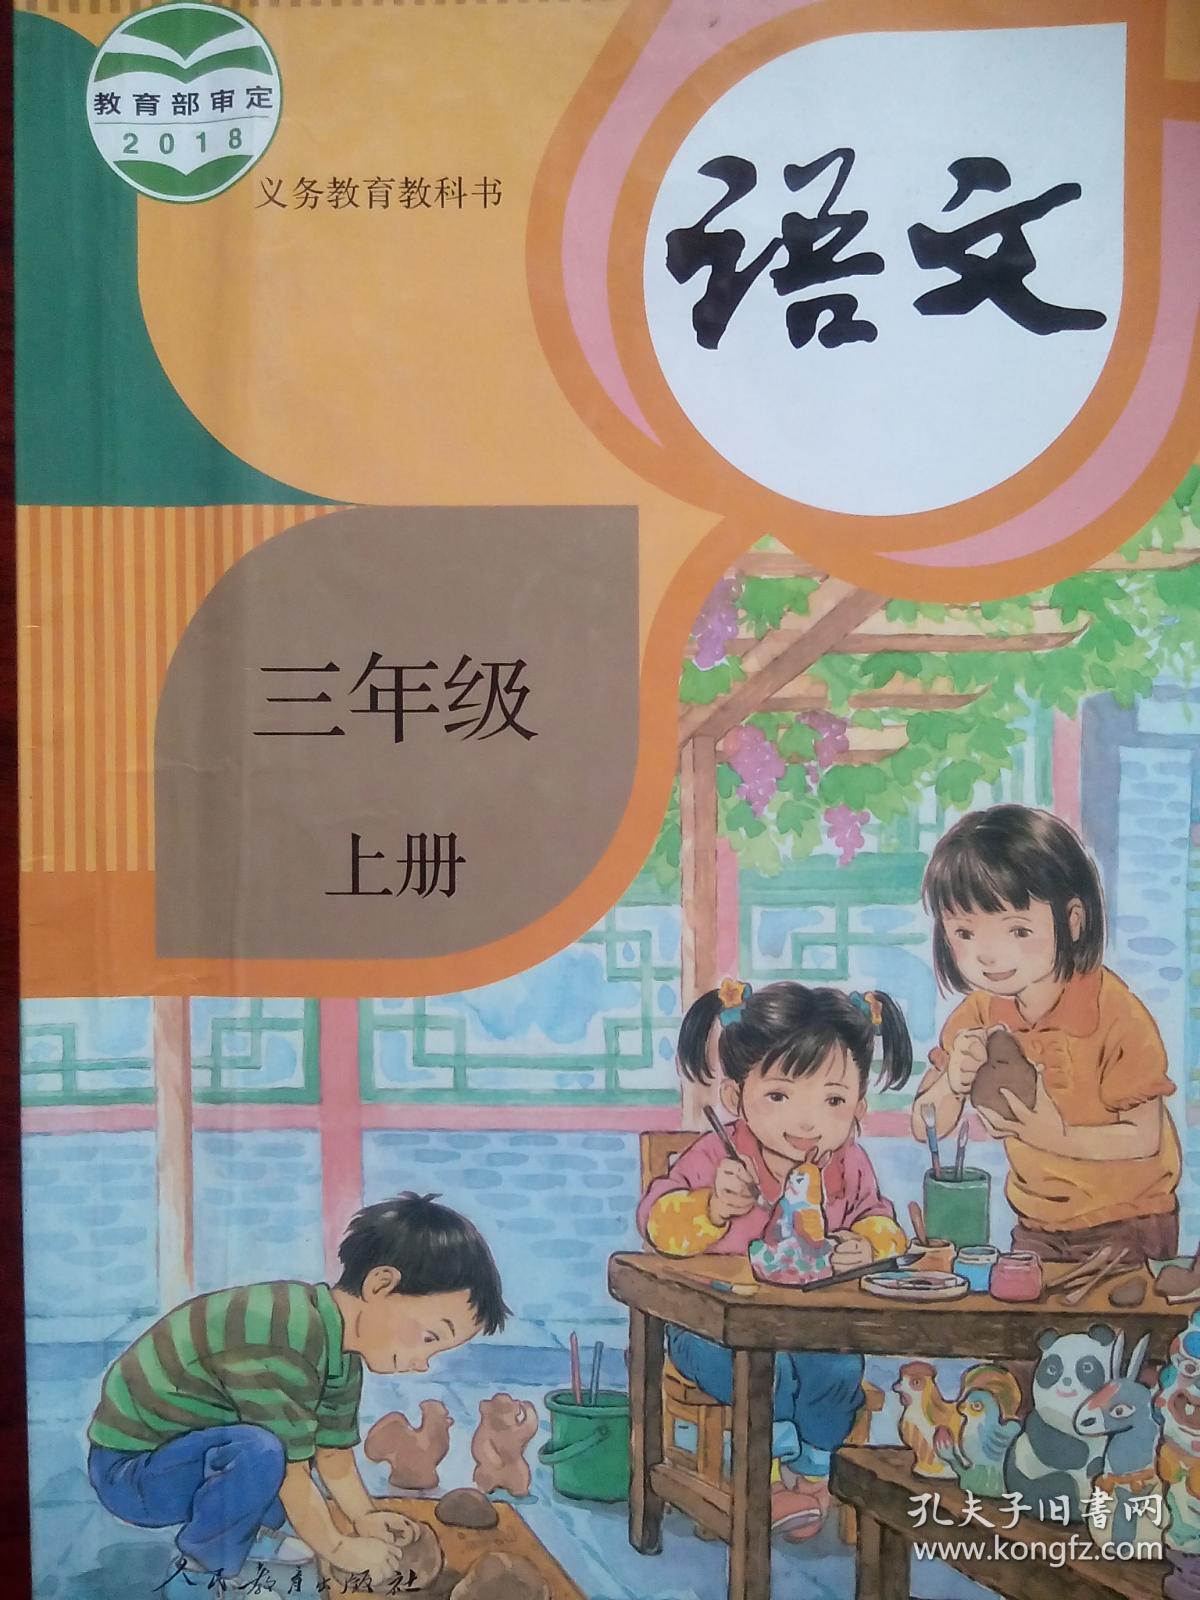 小学语文课本封面三胎图片